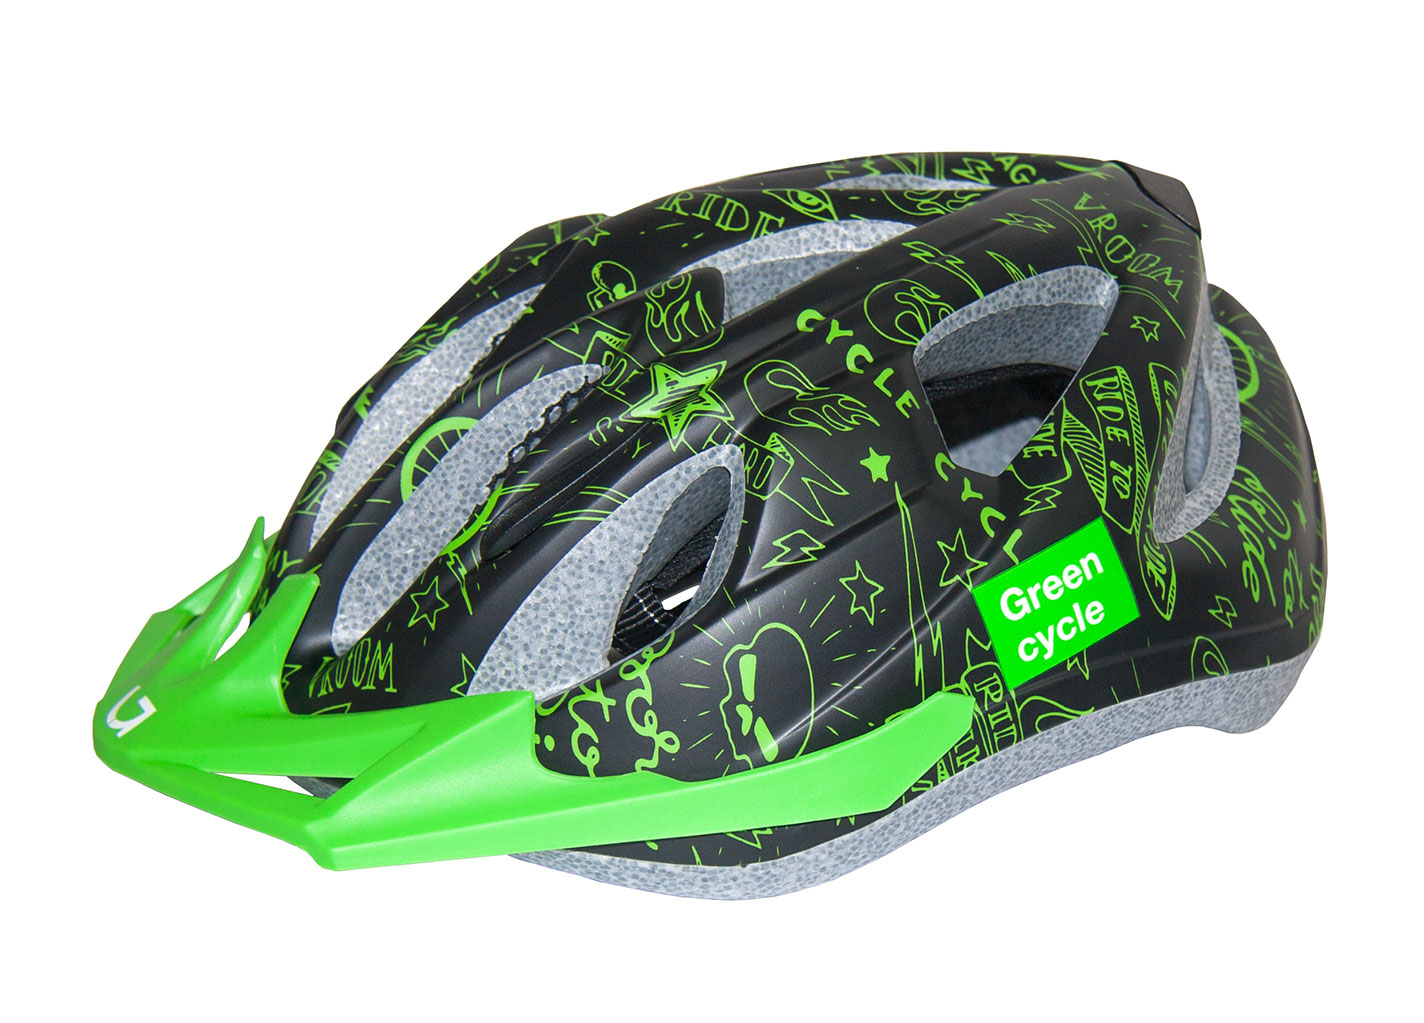 Шлем детский Green Cycle Fast Five размер 50-56см черно-зеленый фото 1